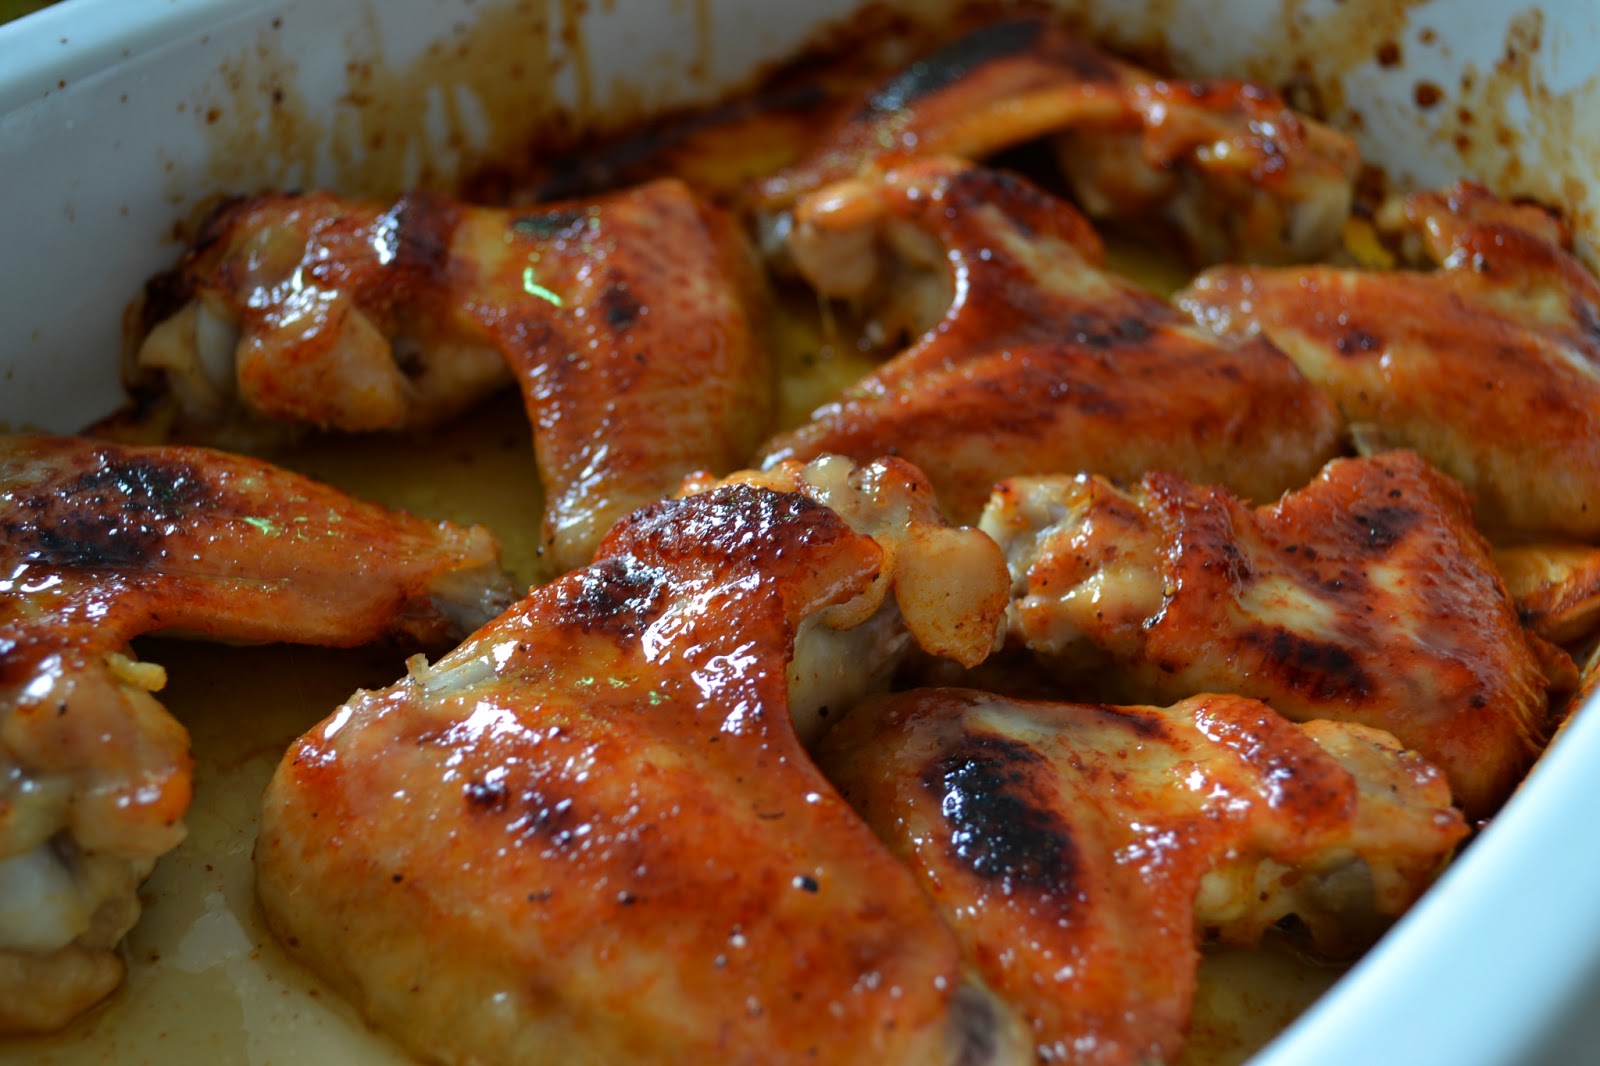 Gute Nahrung macht glücklich : Hähnchenflügel aus dem Ofen